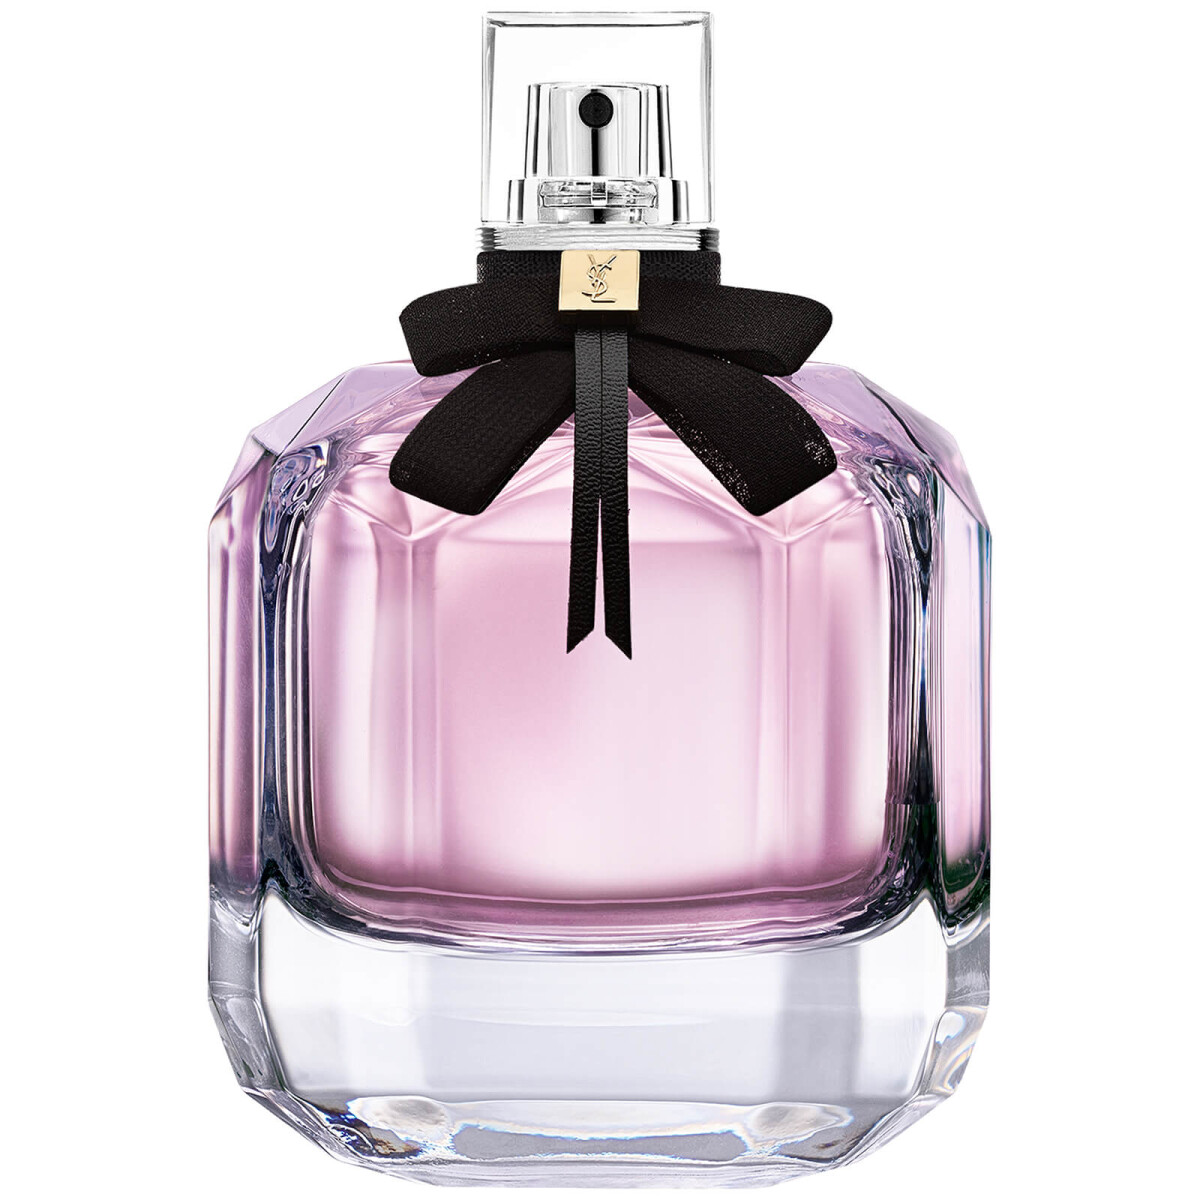 Perfume Ysl Mon Paris Edp 90 ml 